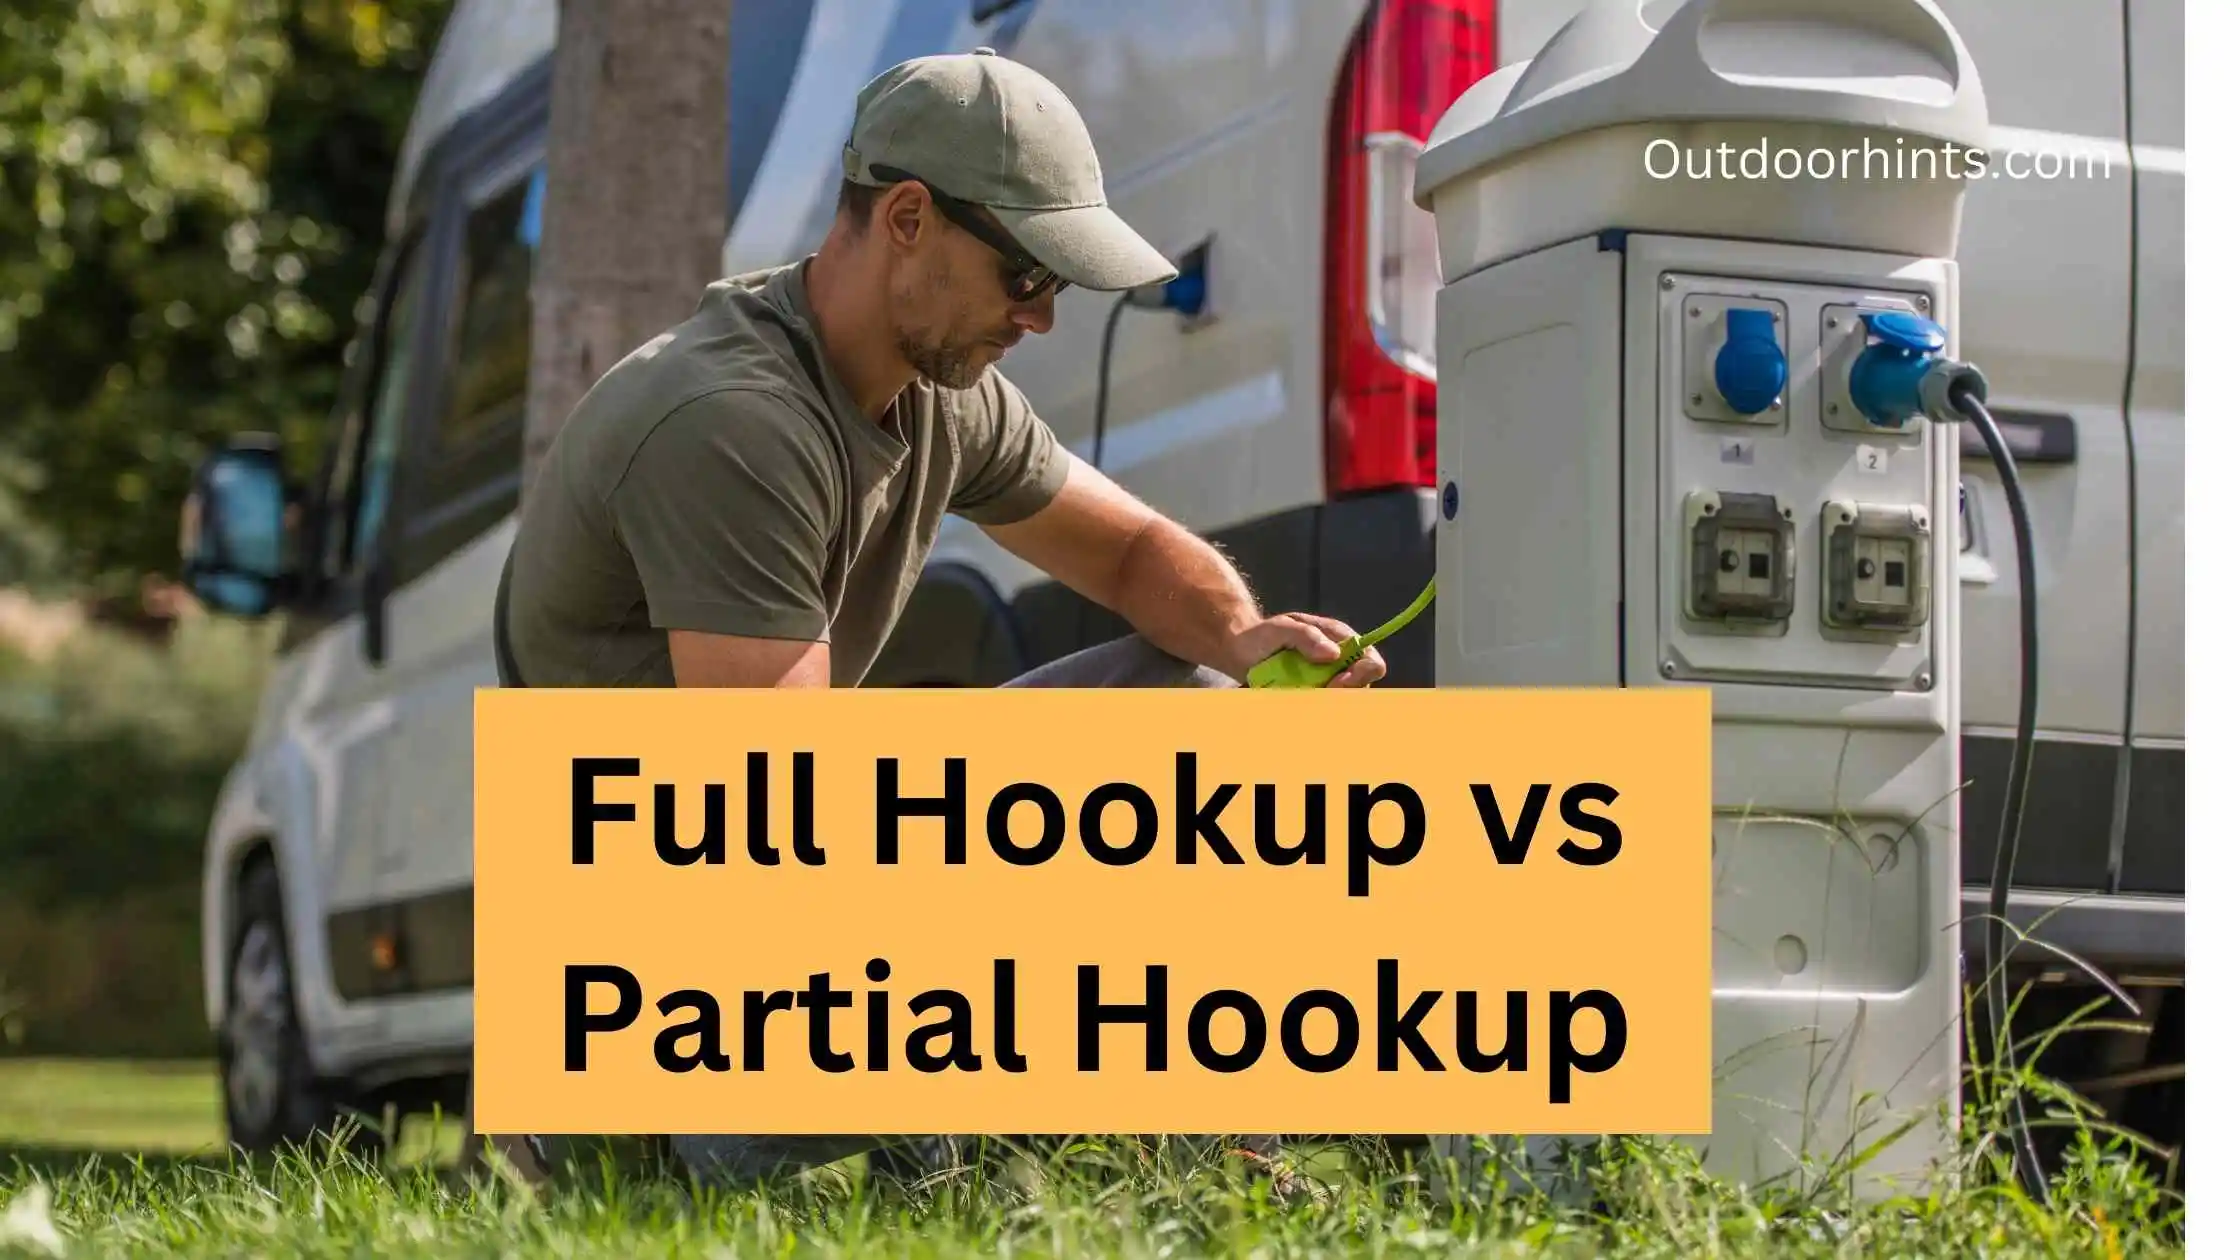 Full Hookup vs Partial Hookup